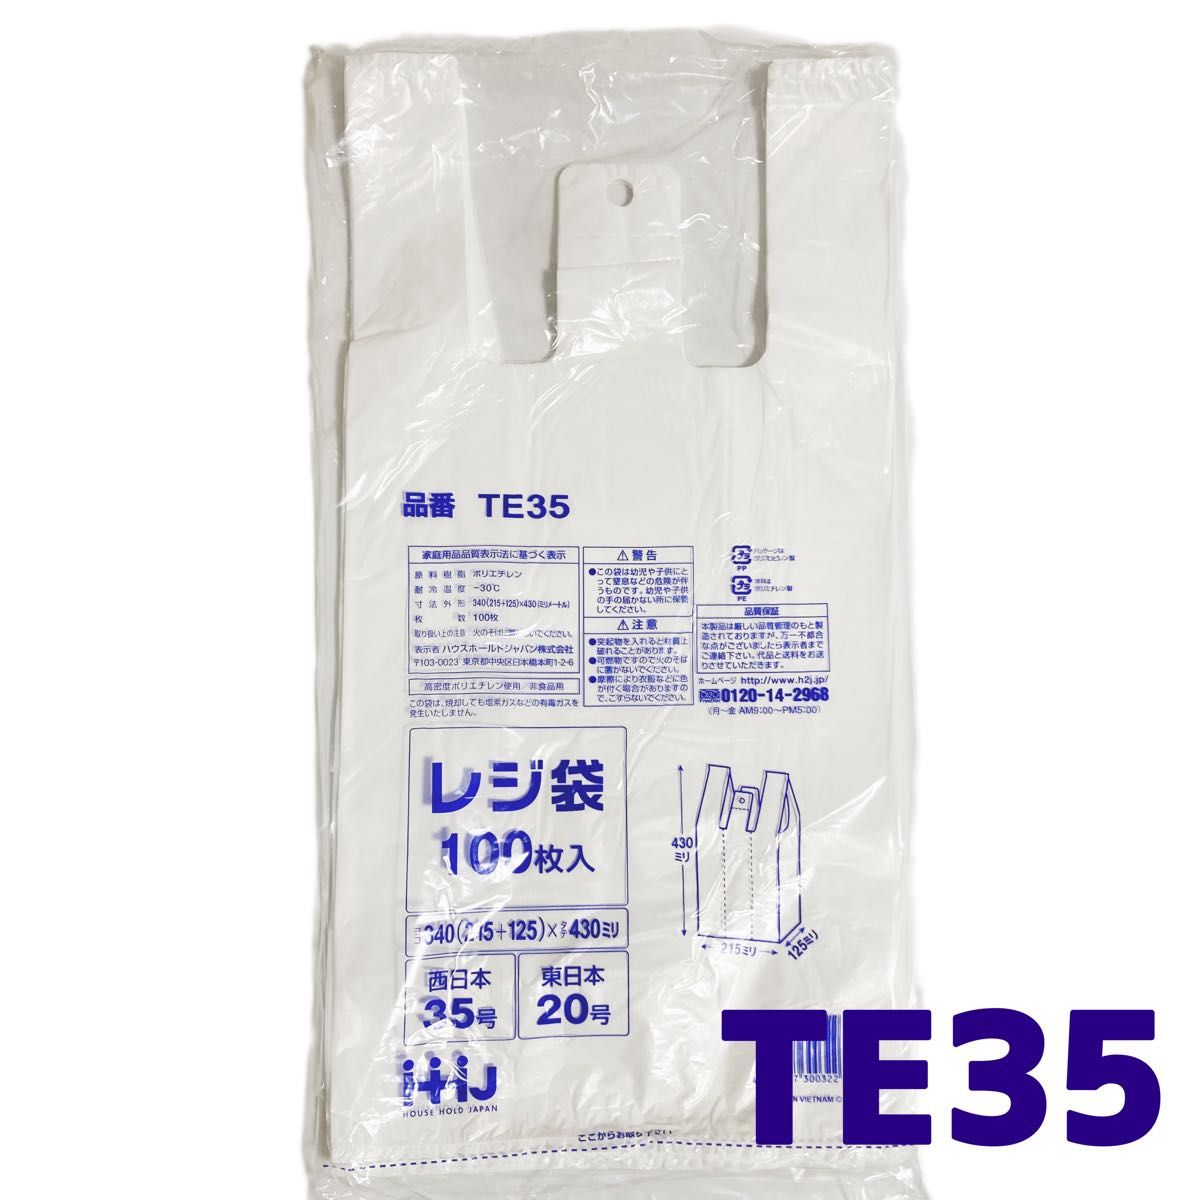 レジ袋 M 200枚 乳白色 無地 エコバッグ 手提げ袋 買い物袋 スーパーの袋 ビニール袋 ポリ袋 ゴミ袋 TE35 Eタイプ